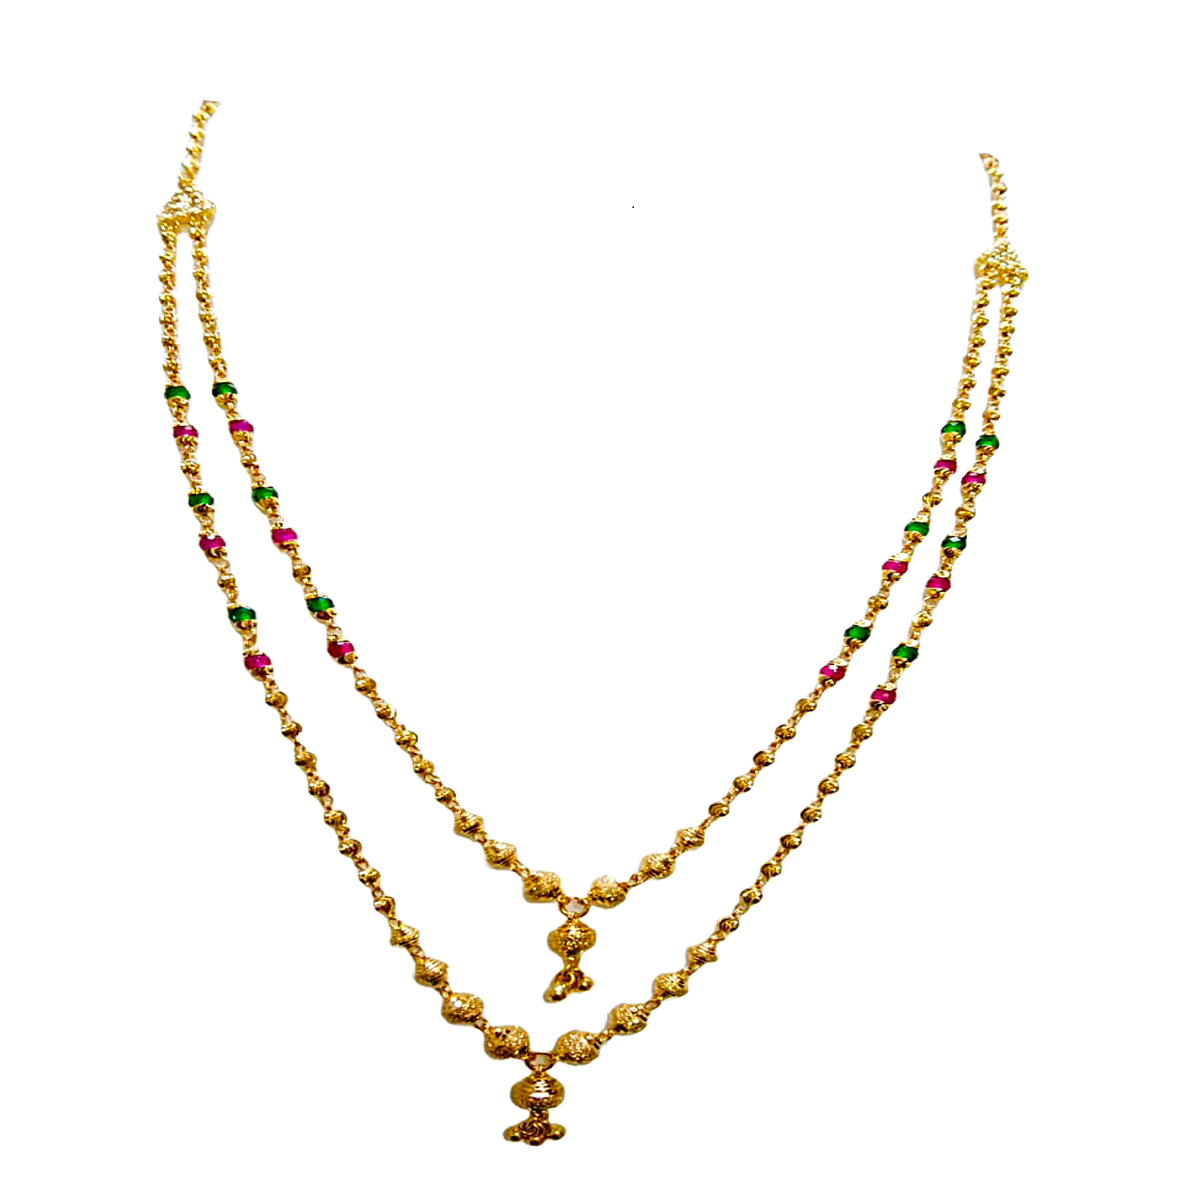 Ashoka gold chain